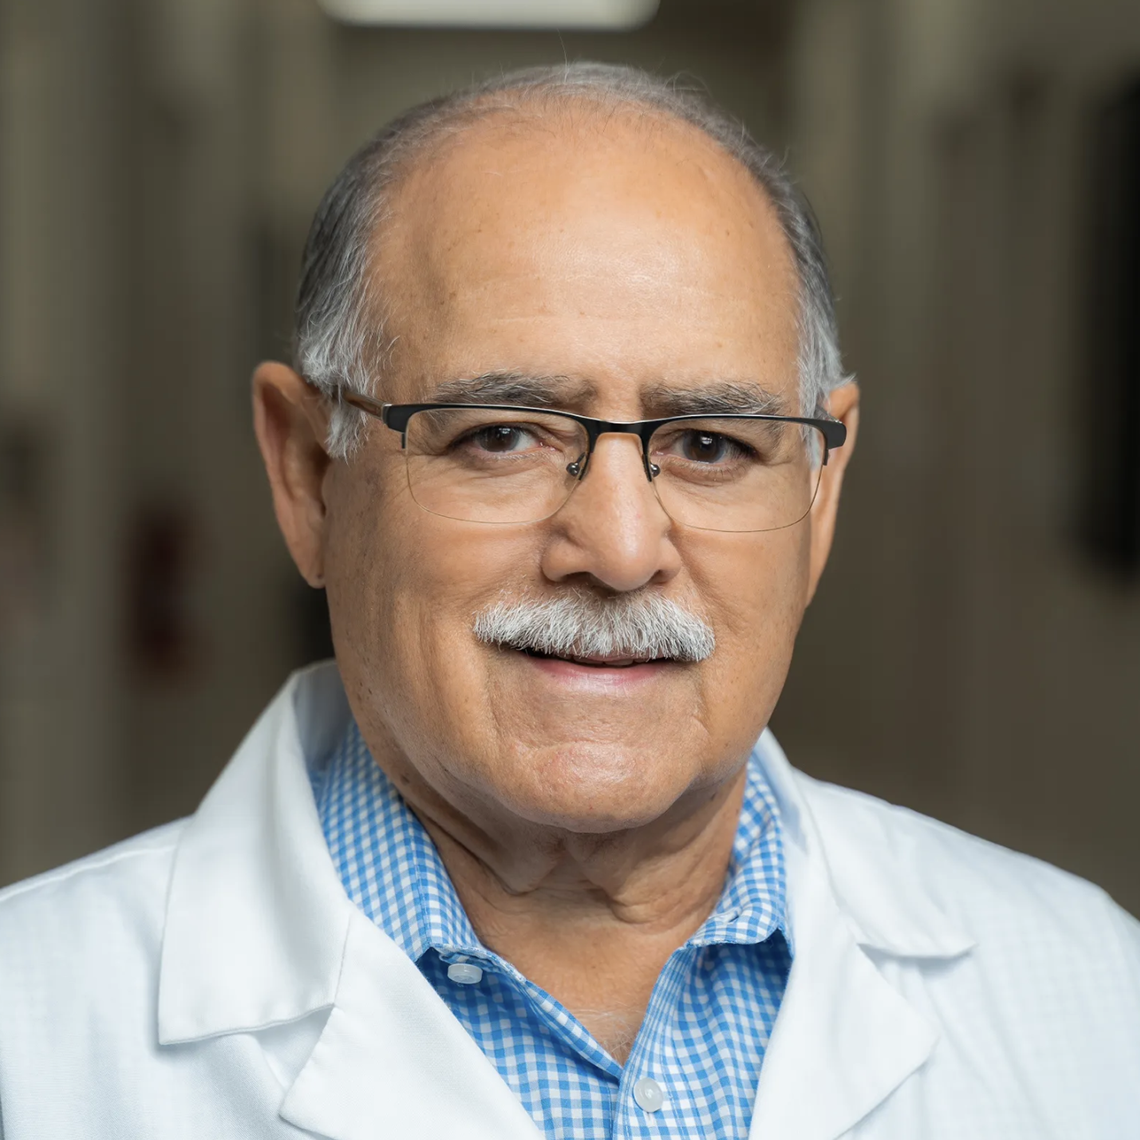 Dr Oscar Sotelo